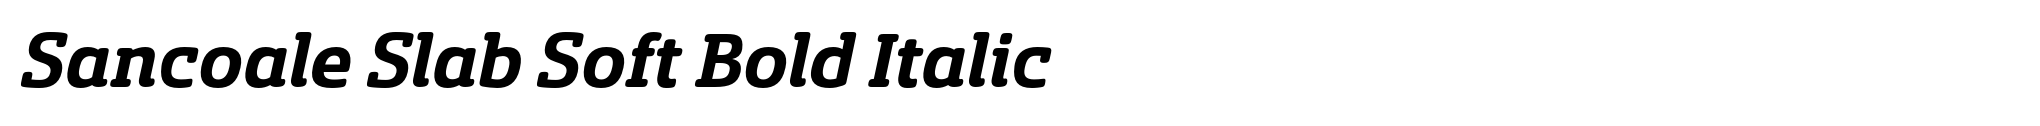 Sancoale Slab Soft Bold Italic image